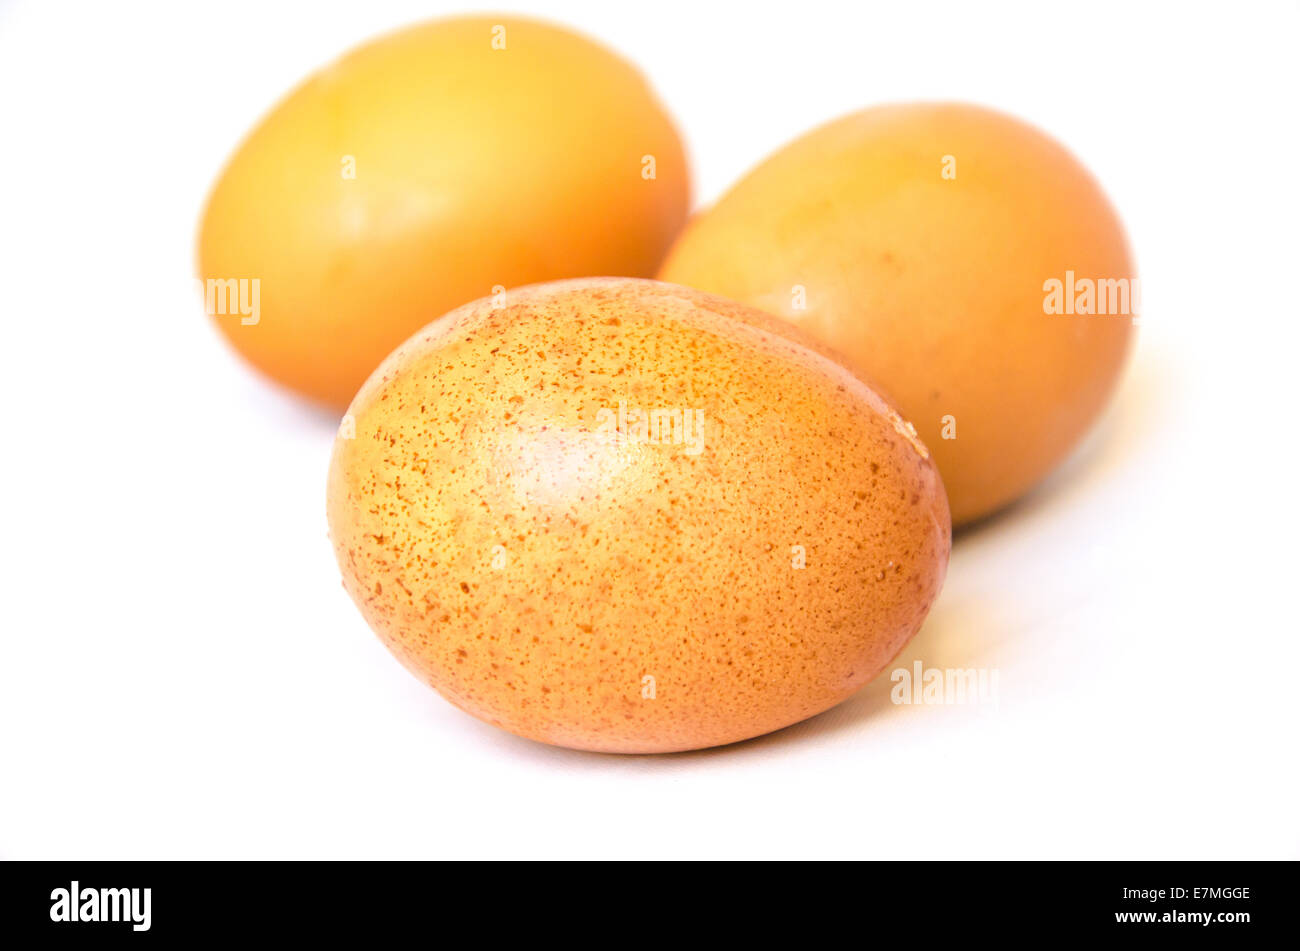 Huevo de pollo marrón sobre fondo blanco. Foto de stock